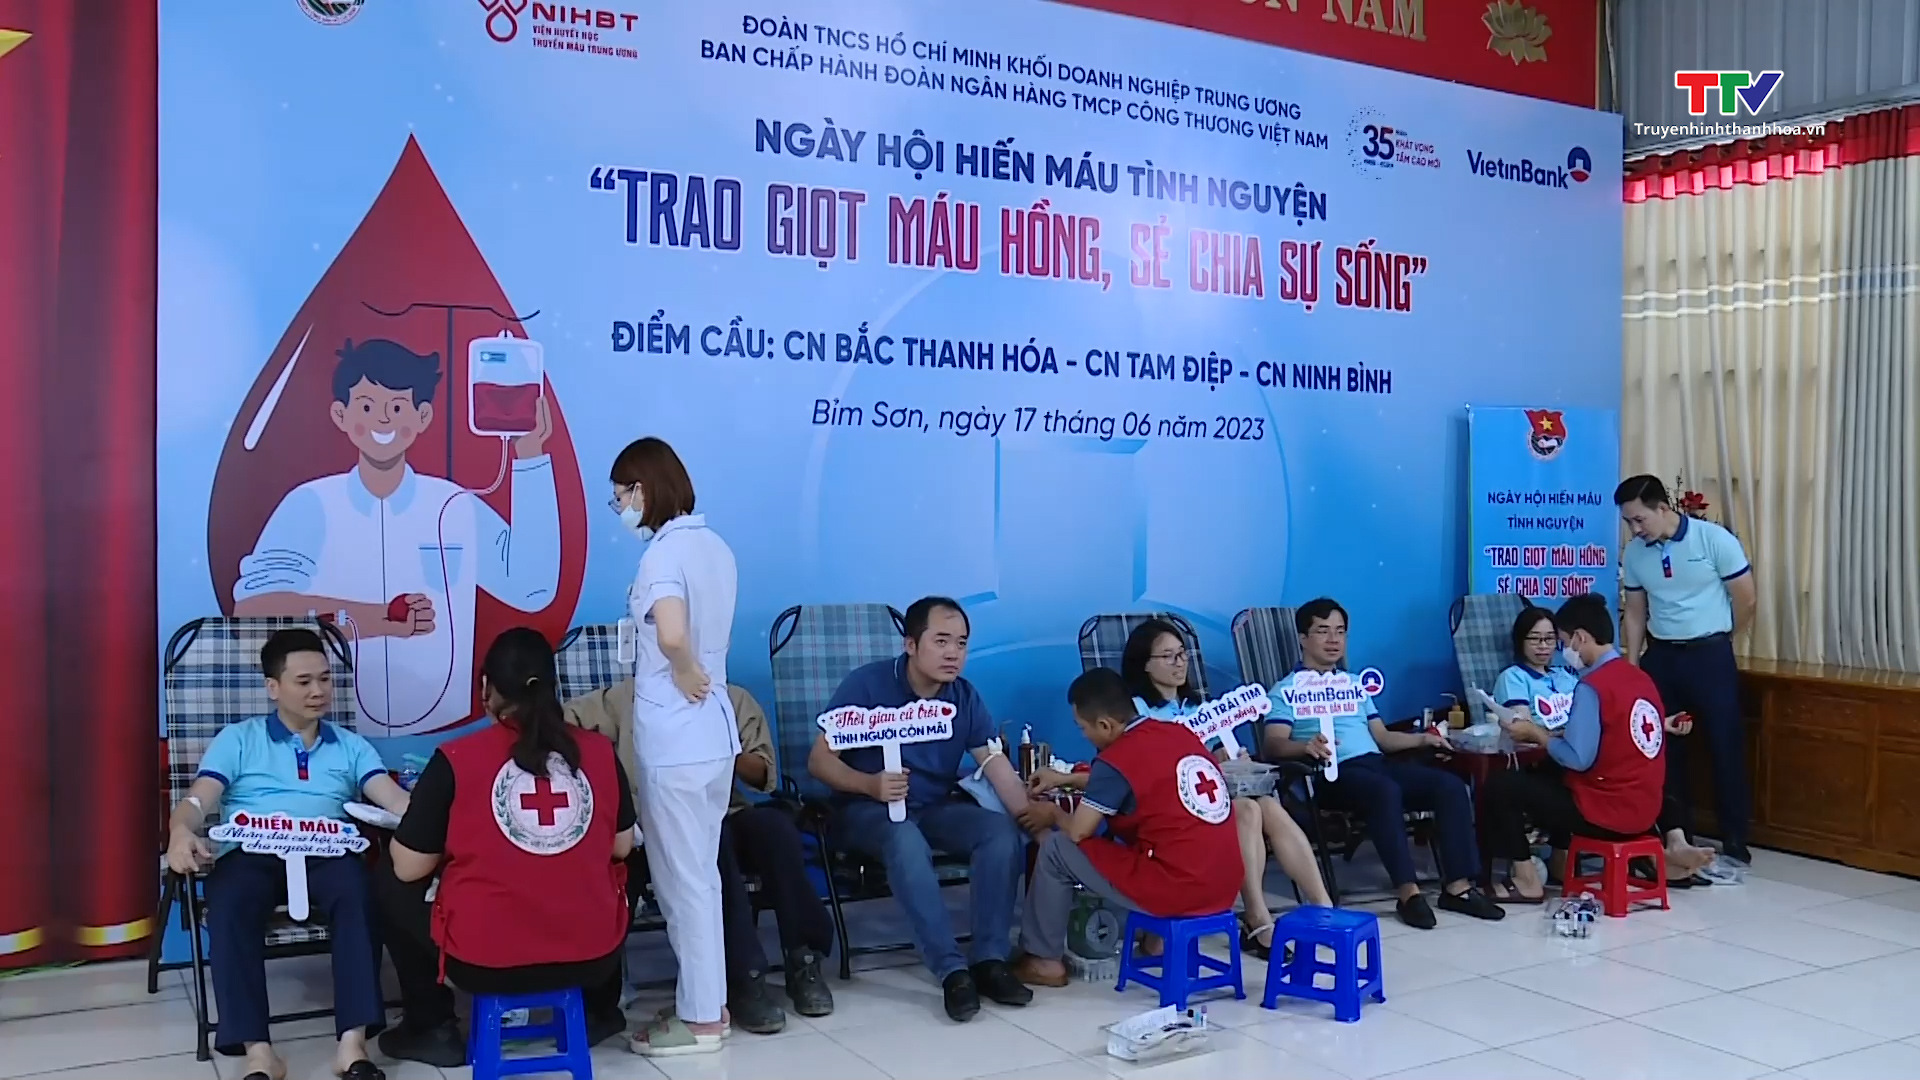 Ngân hàng VietinBank chi nhánh Bắc Thanh Hóa tích cực tham gia phong trào hiến máu tình nguyện - Ảnh 3.